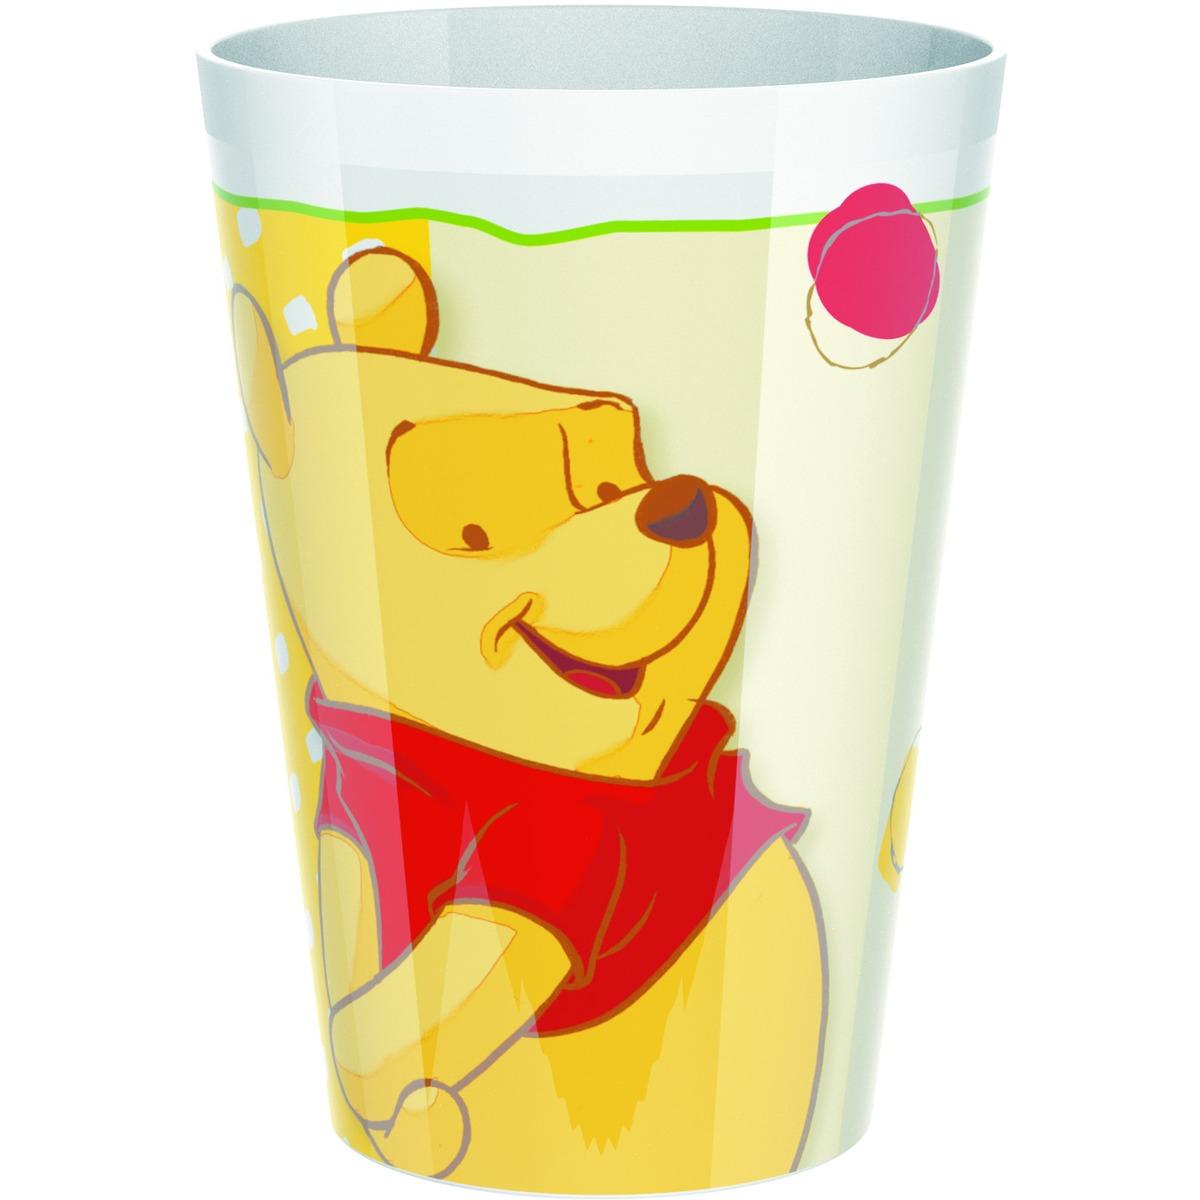 Gobelet Winnie The Pooh en plastique - 11 cm - Multicolore